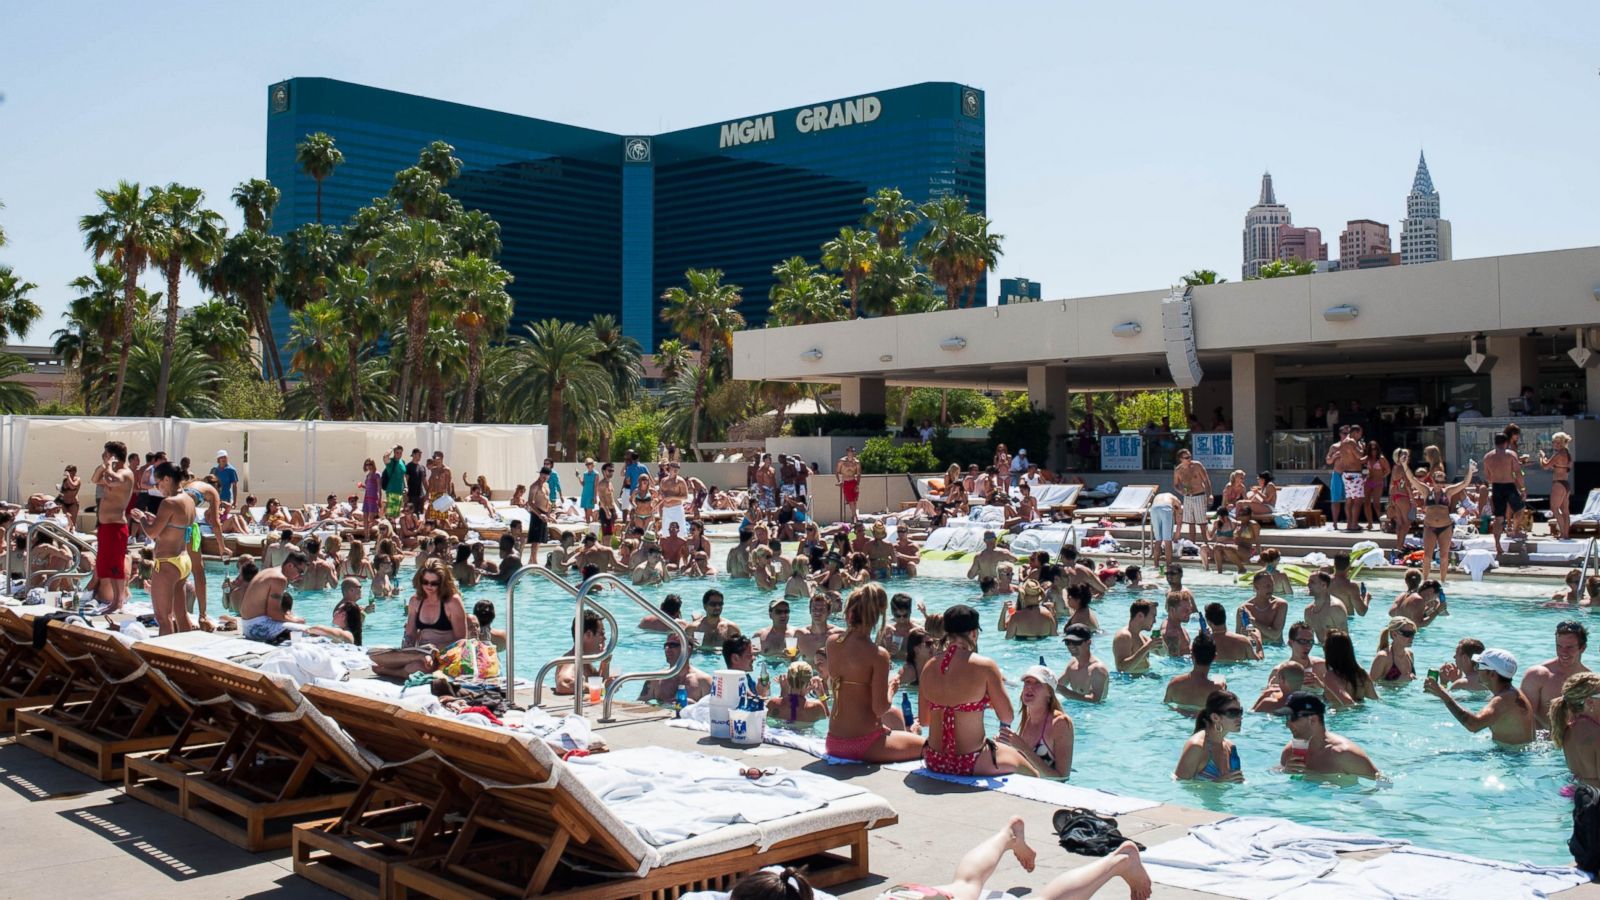 2014's Hottest Las Vegas Pool Parties - ABC News